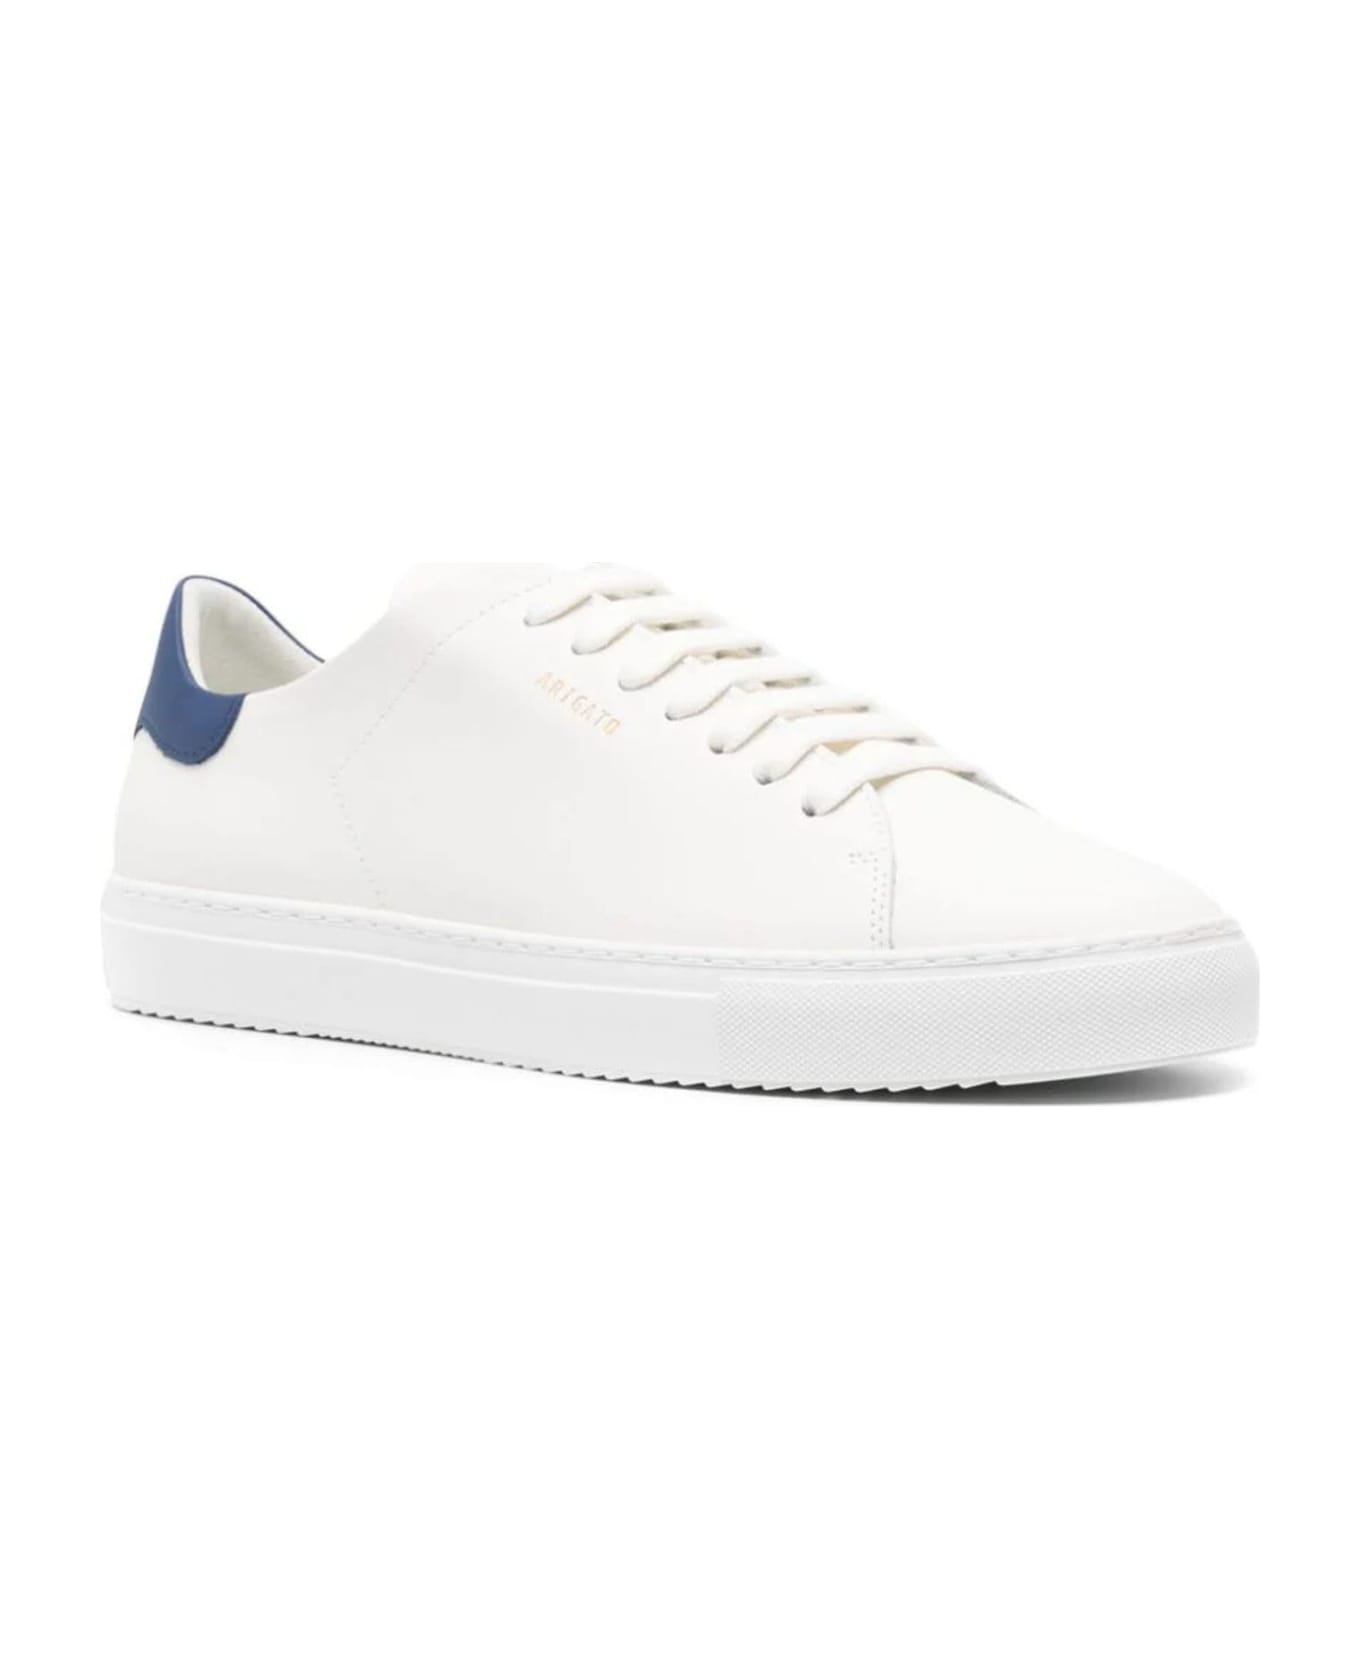 Axel Arigato White Clean 90 Leather Sneakers - White Navy